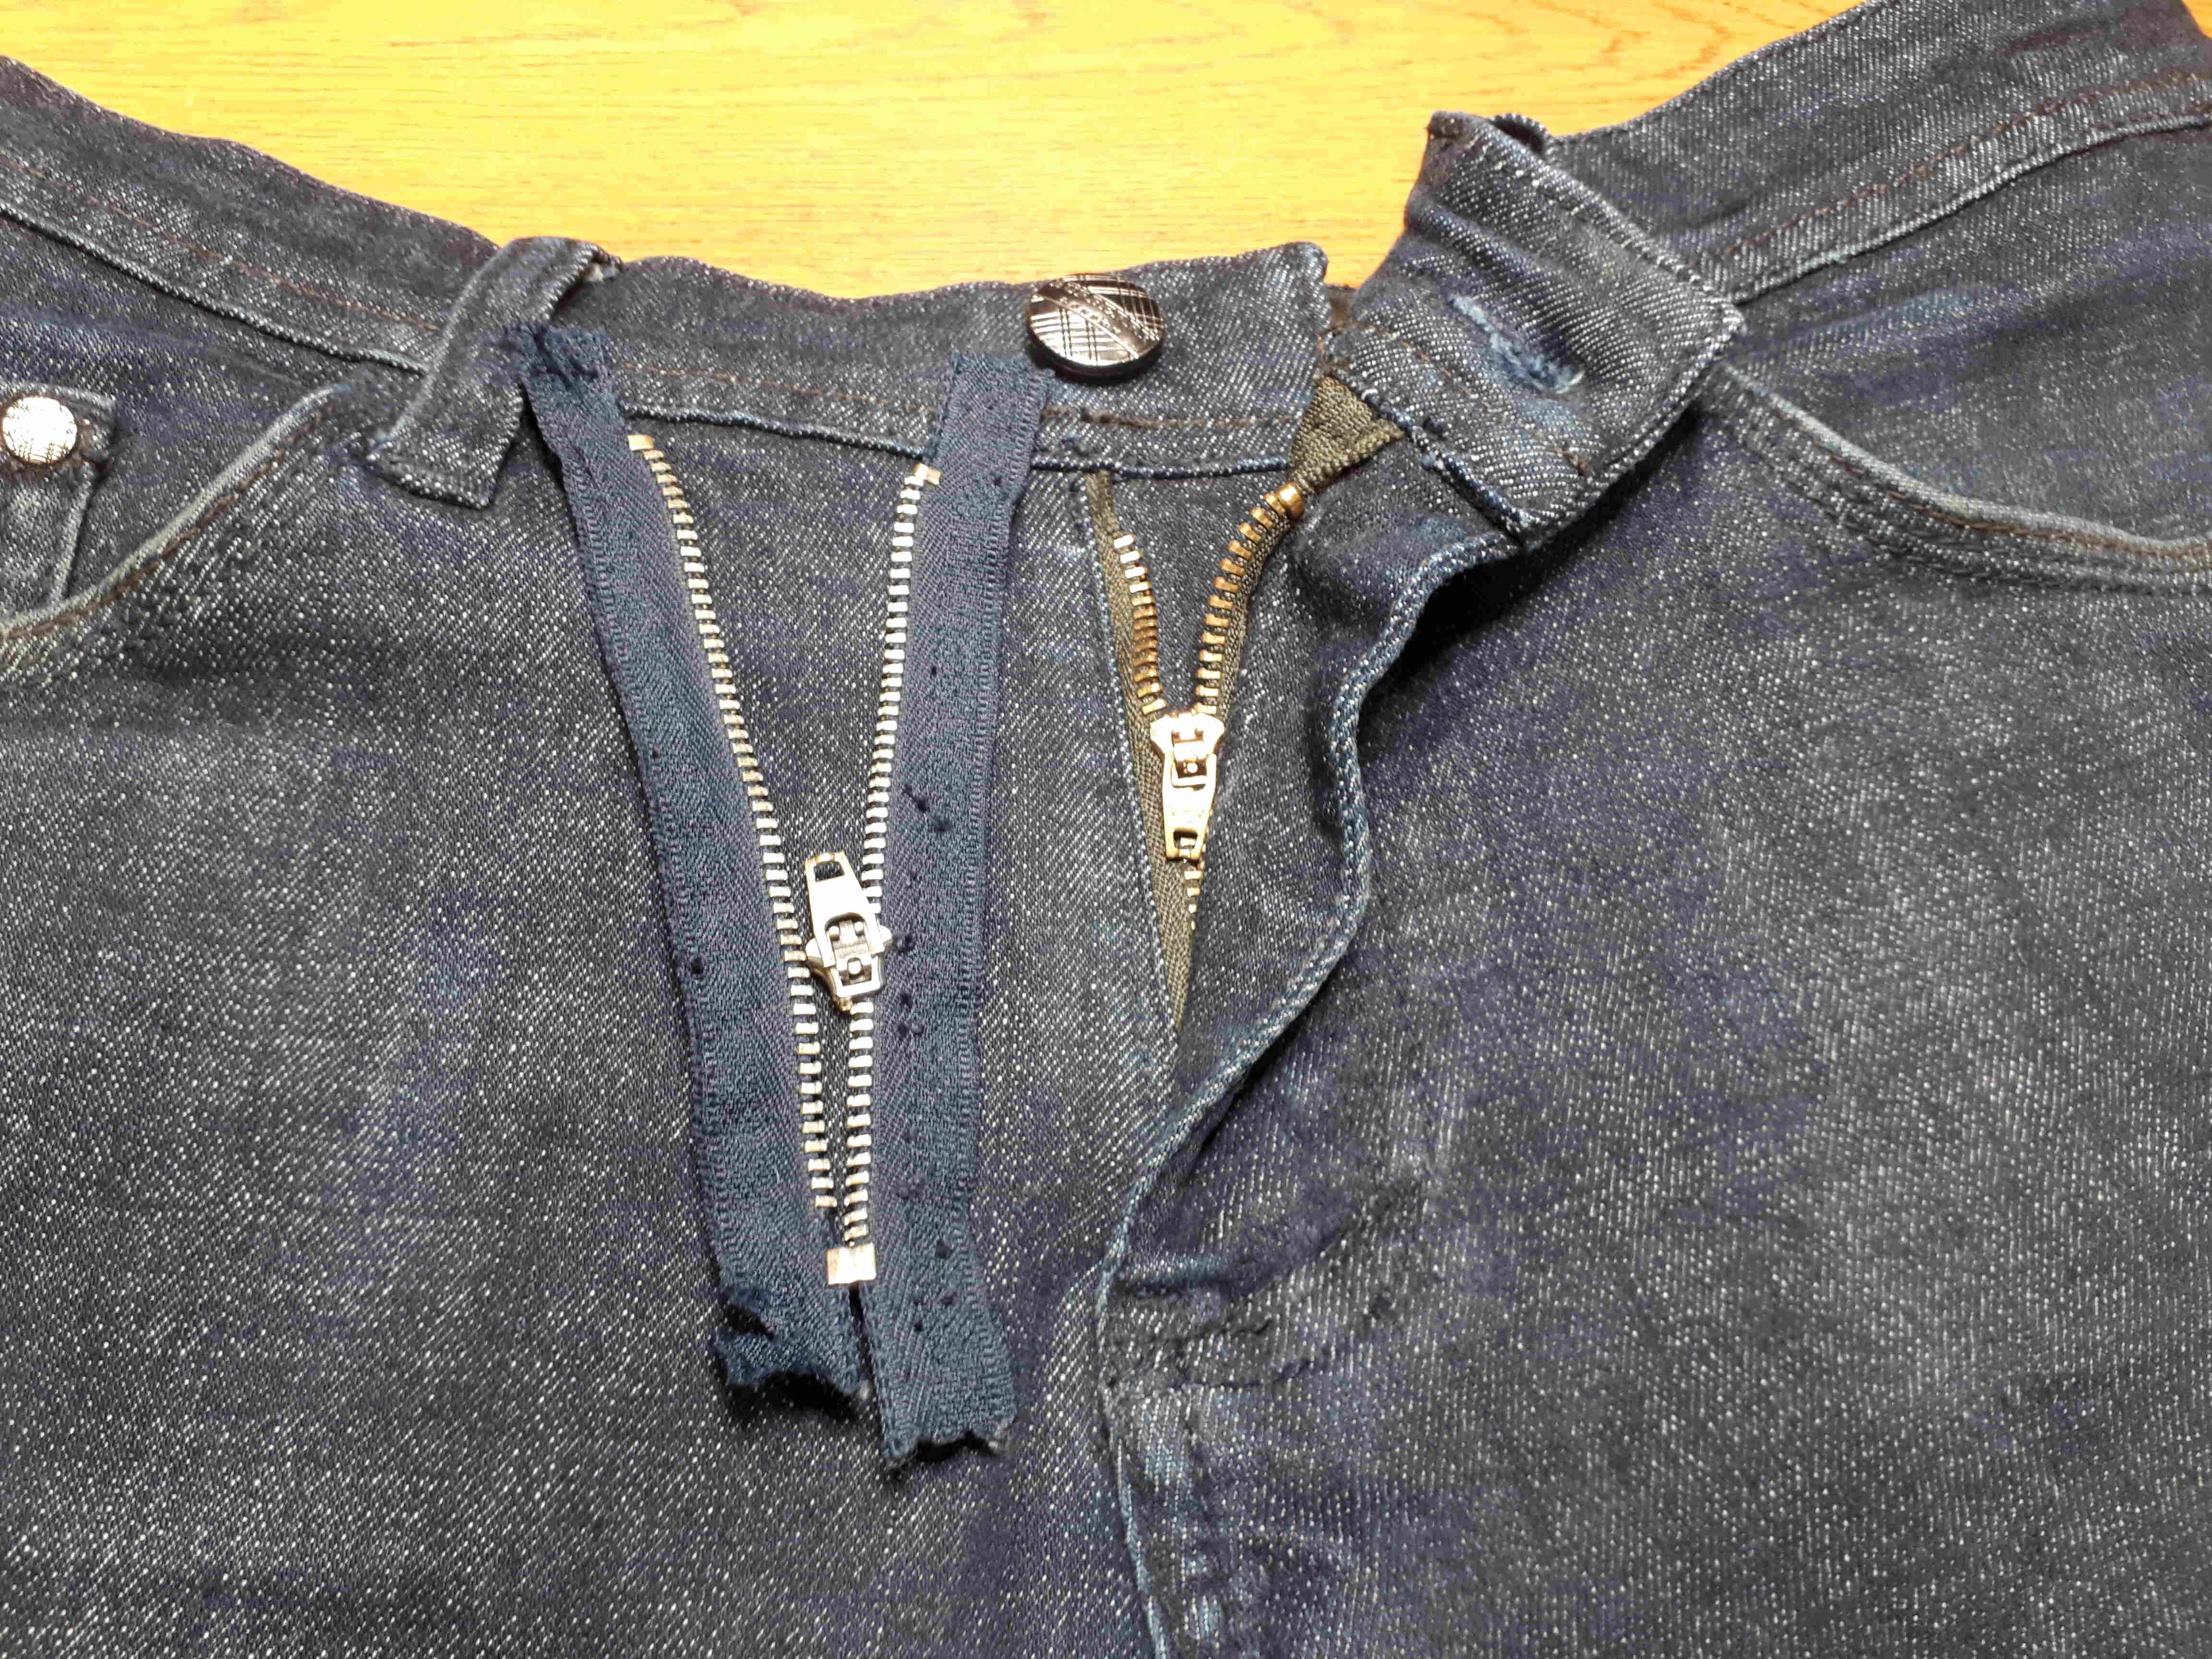 Как самостоятельно заменить молнию в джинсах